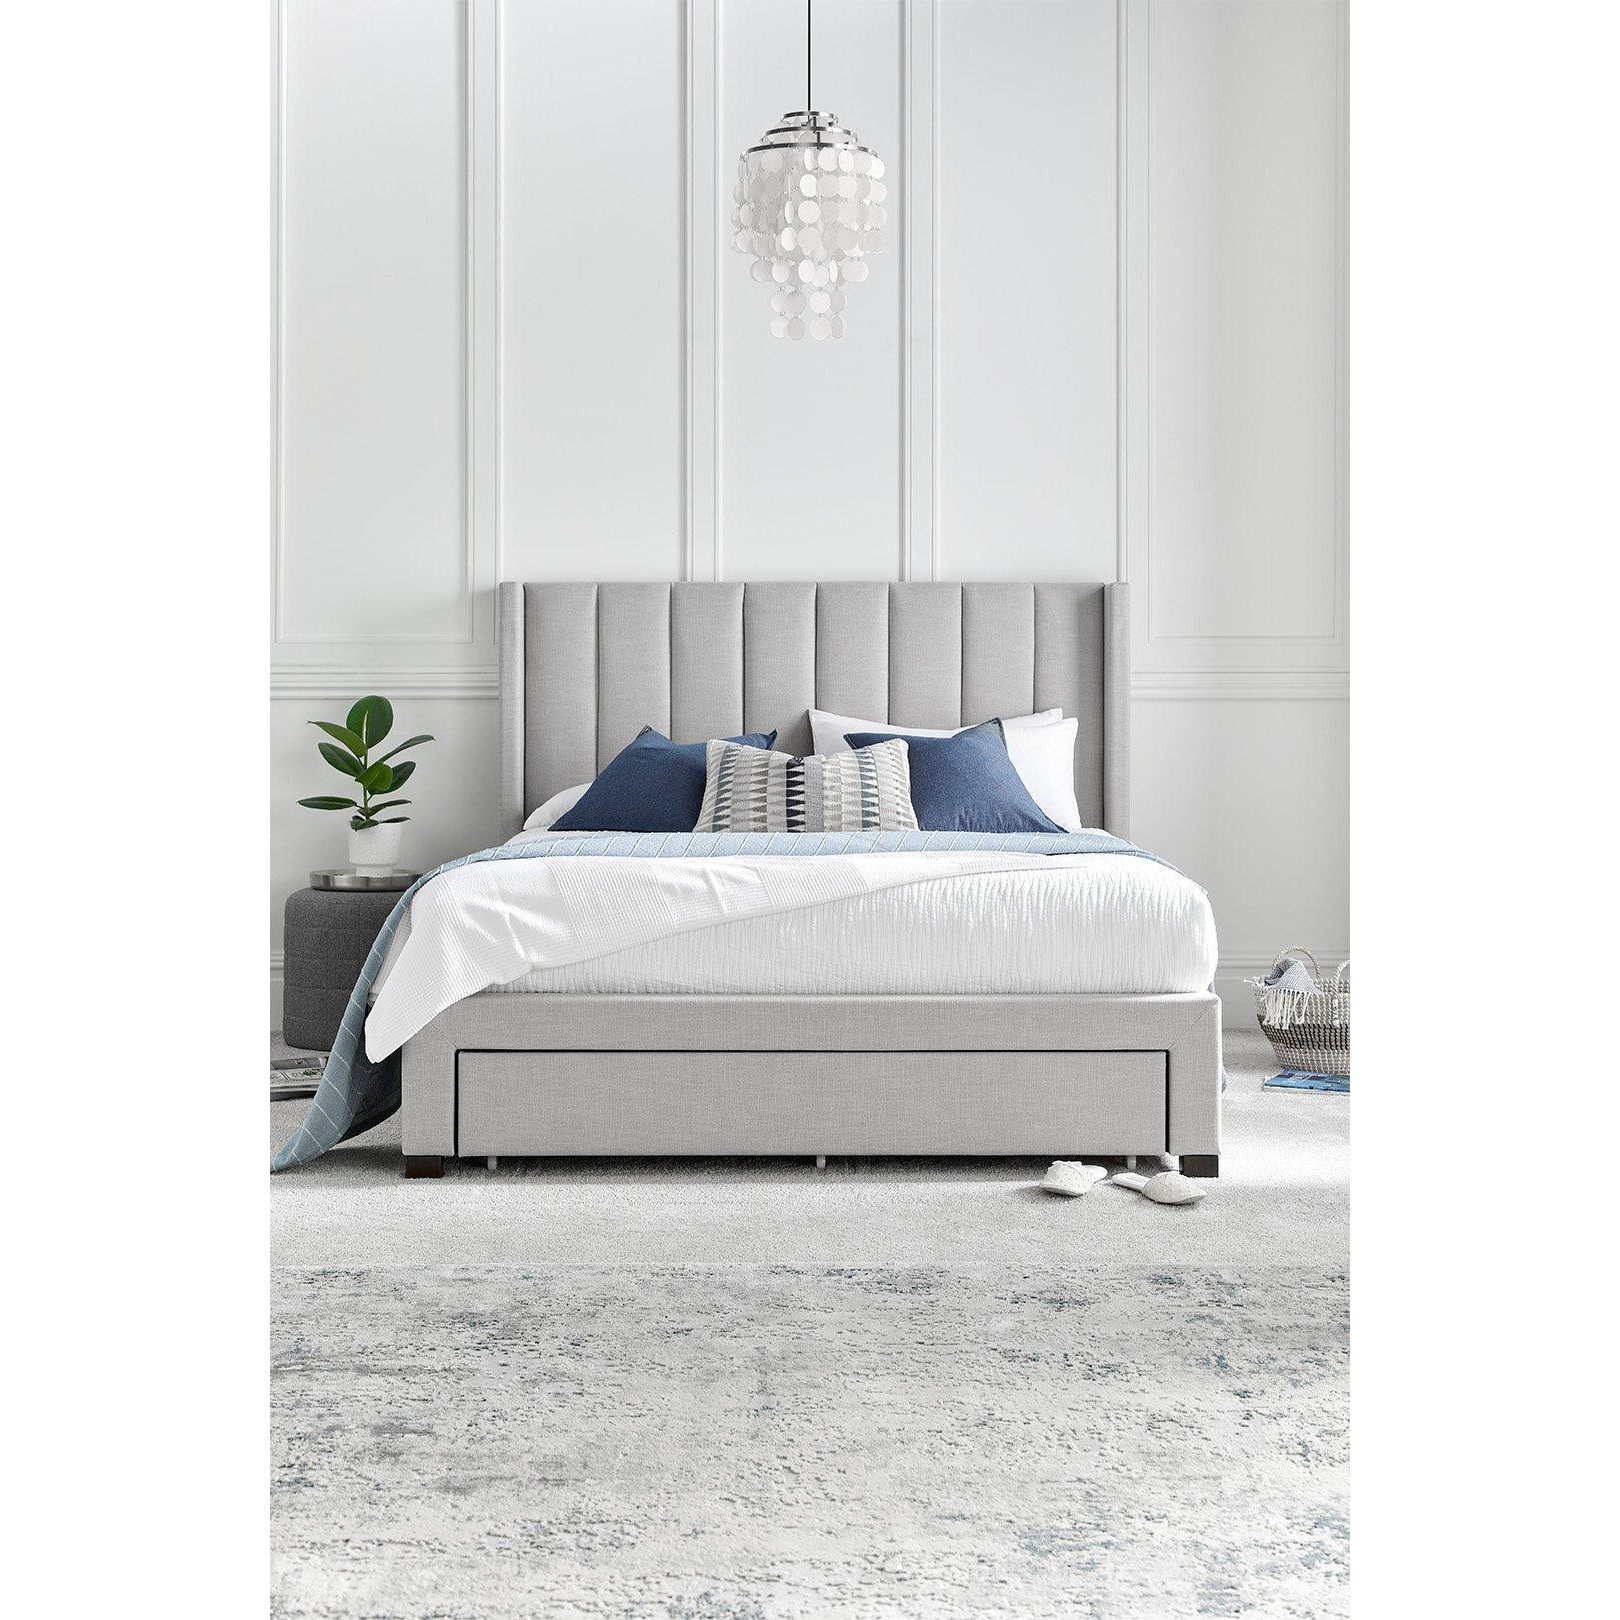 Savannah Grey Mist Upholstered - Bed Frame Only - image 1